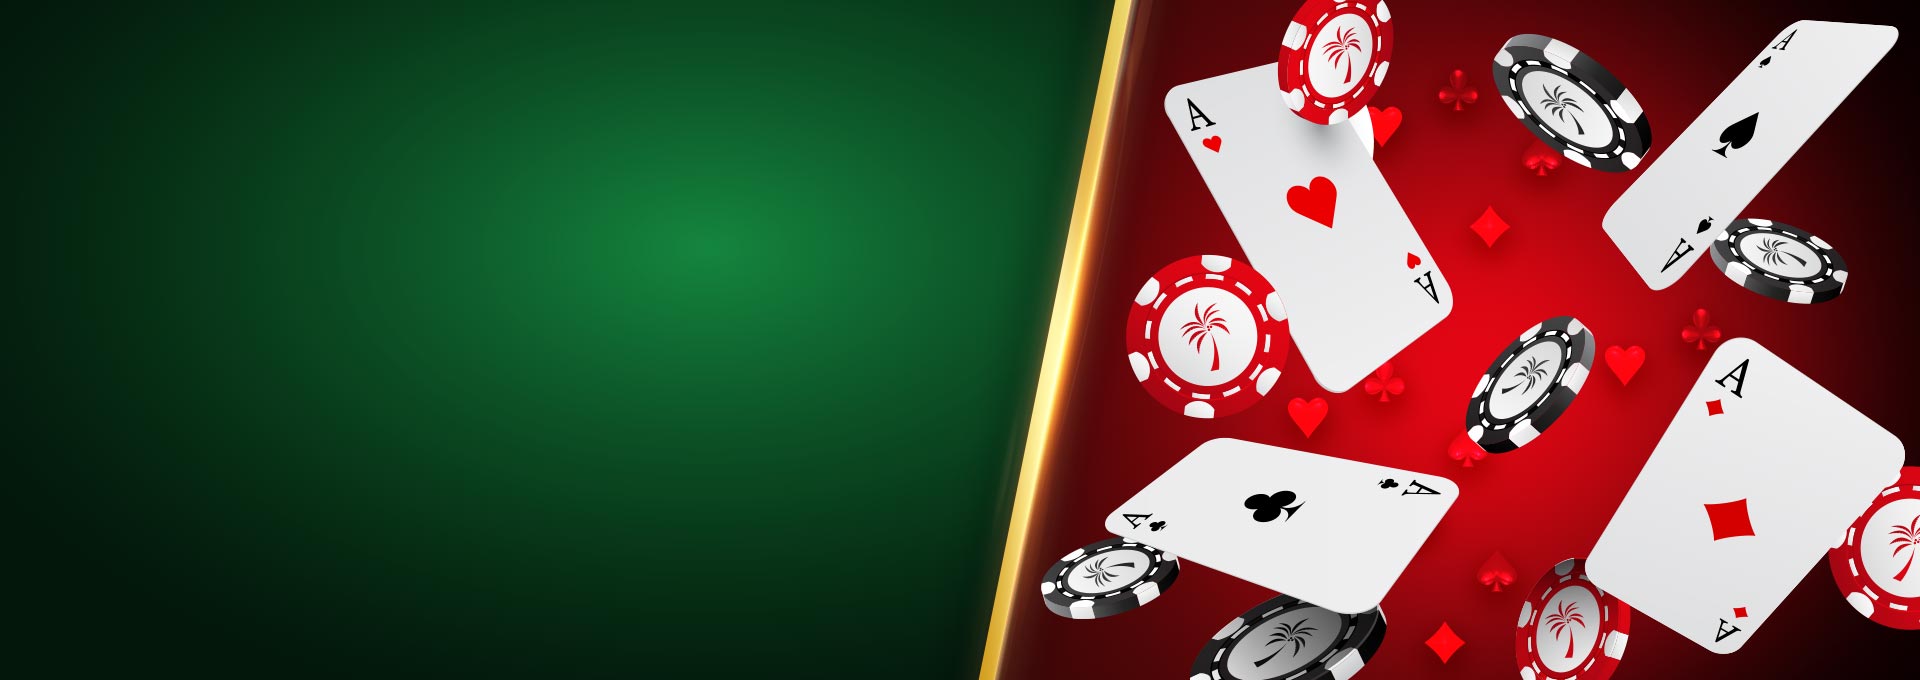 Азартные игры скачать бесплатно без регистрации для 5800